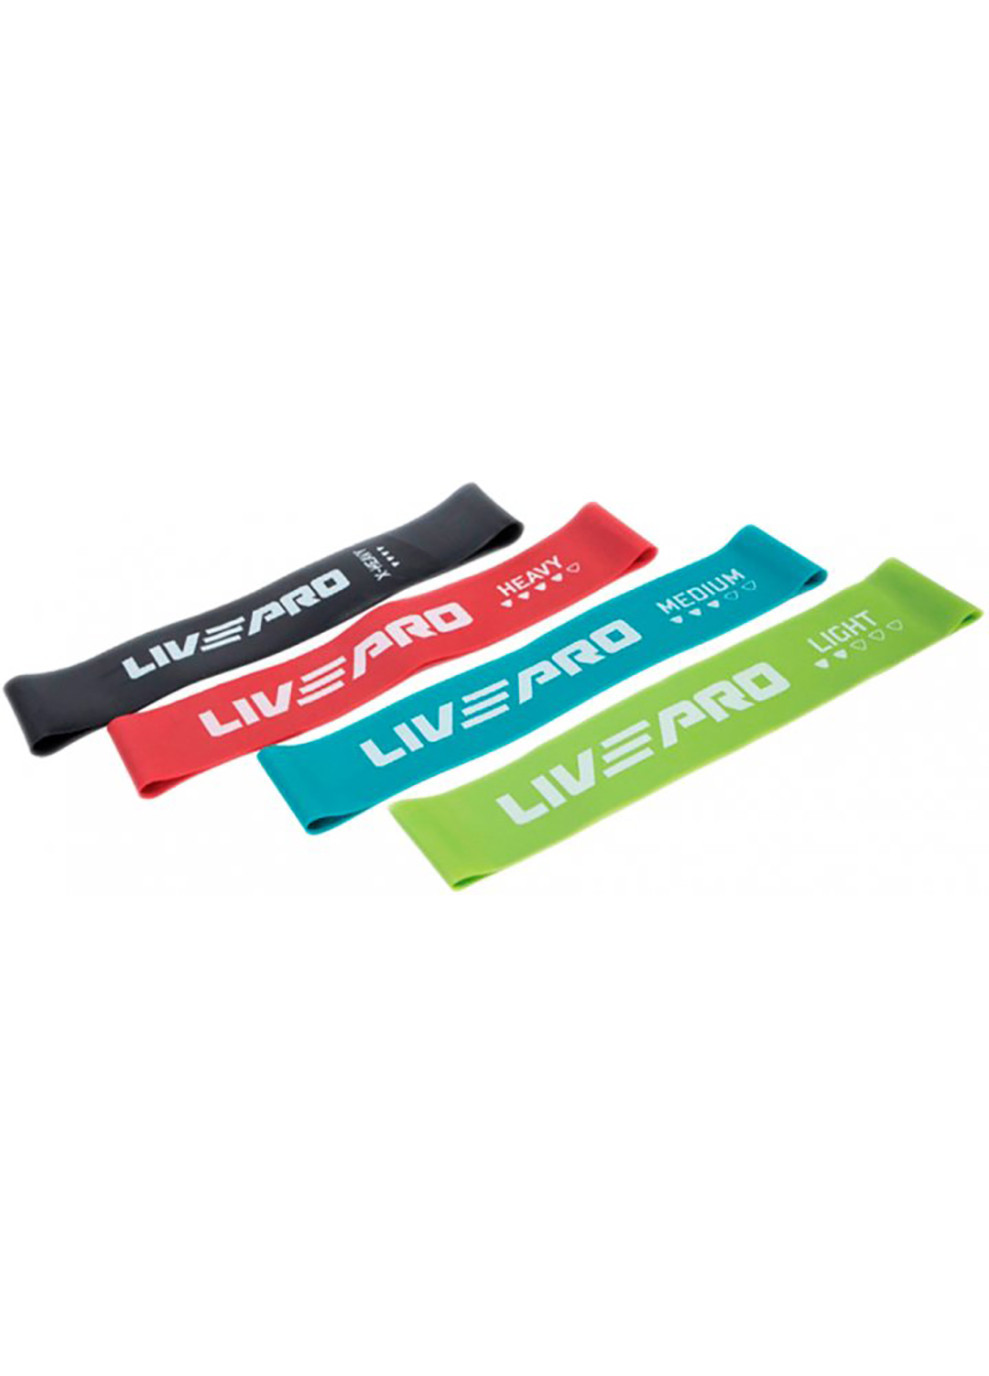 Набор фитнеса резинок RESISTANCE LOOPS BANDS зеленый, красный, голубой, черный 4шт. 500x20мм LivePro (258402827)